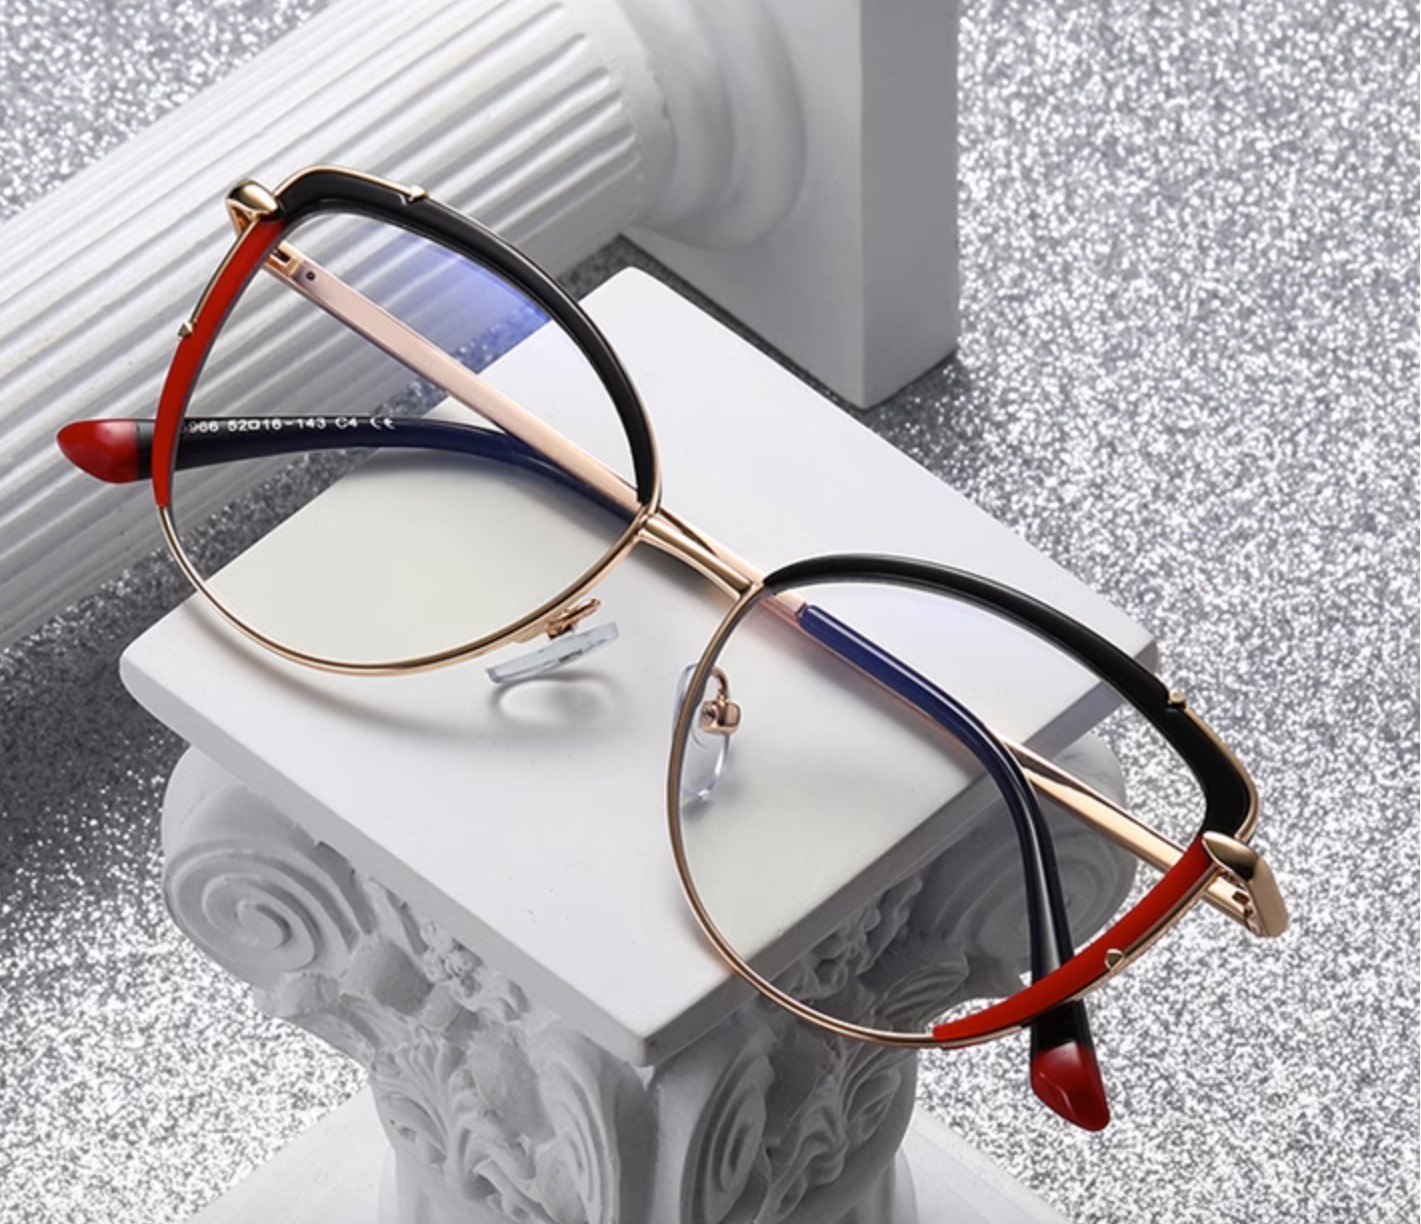 欧米セレブ高級メガネ キャットアイ型ナイロール 伊達メガネ赤ヒョウ柄ブルーライトカットレンズ眼鏡軽量TR90メガネフレーム バイカラー度付きレンズ度なし